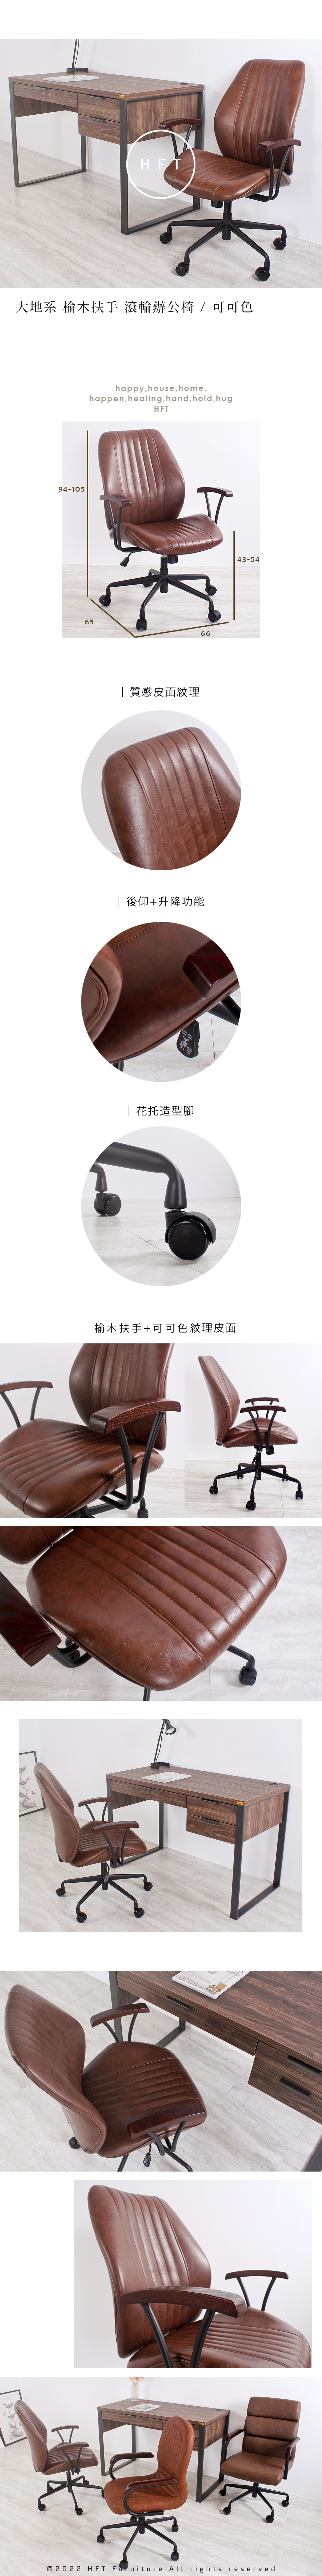 HFT-0082-wood-arm-office-chair.jpg